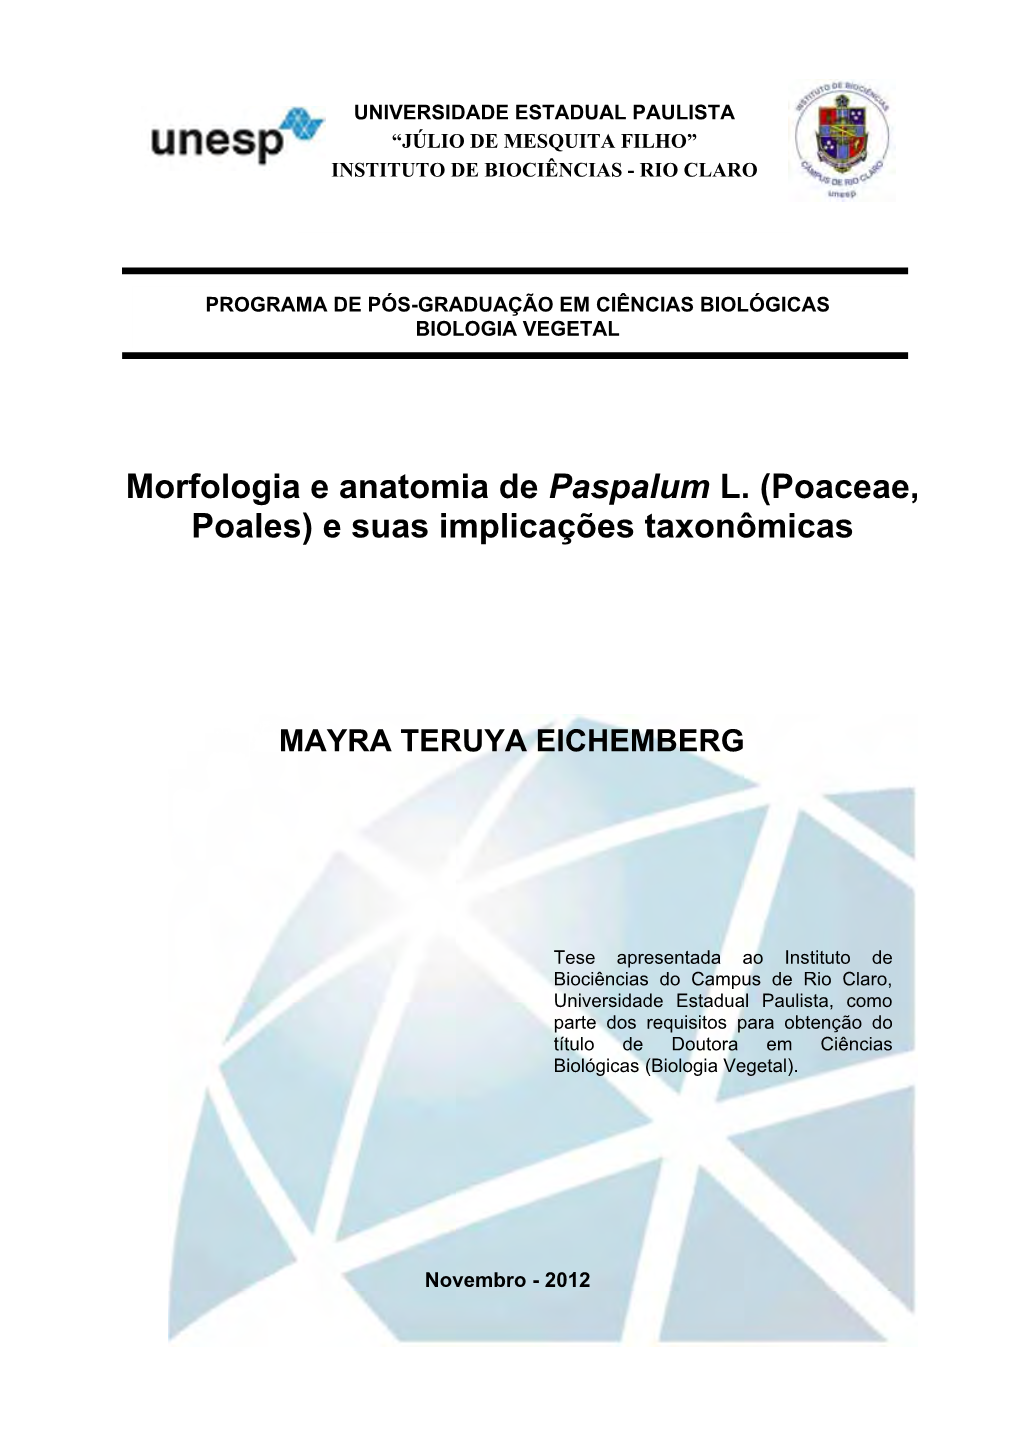 Morfologia E Anatomia De Paspalum L. (Poaceae, Poales) E Suas Implicações Taxonômicas